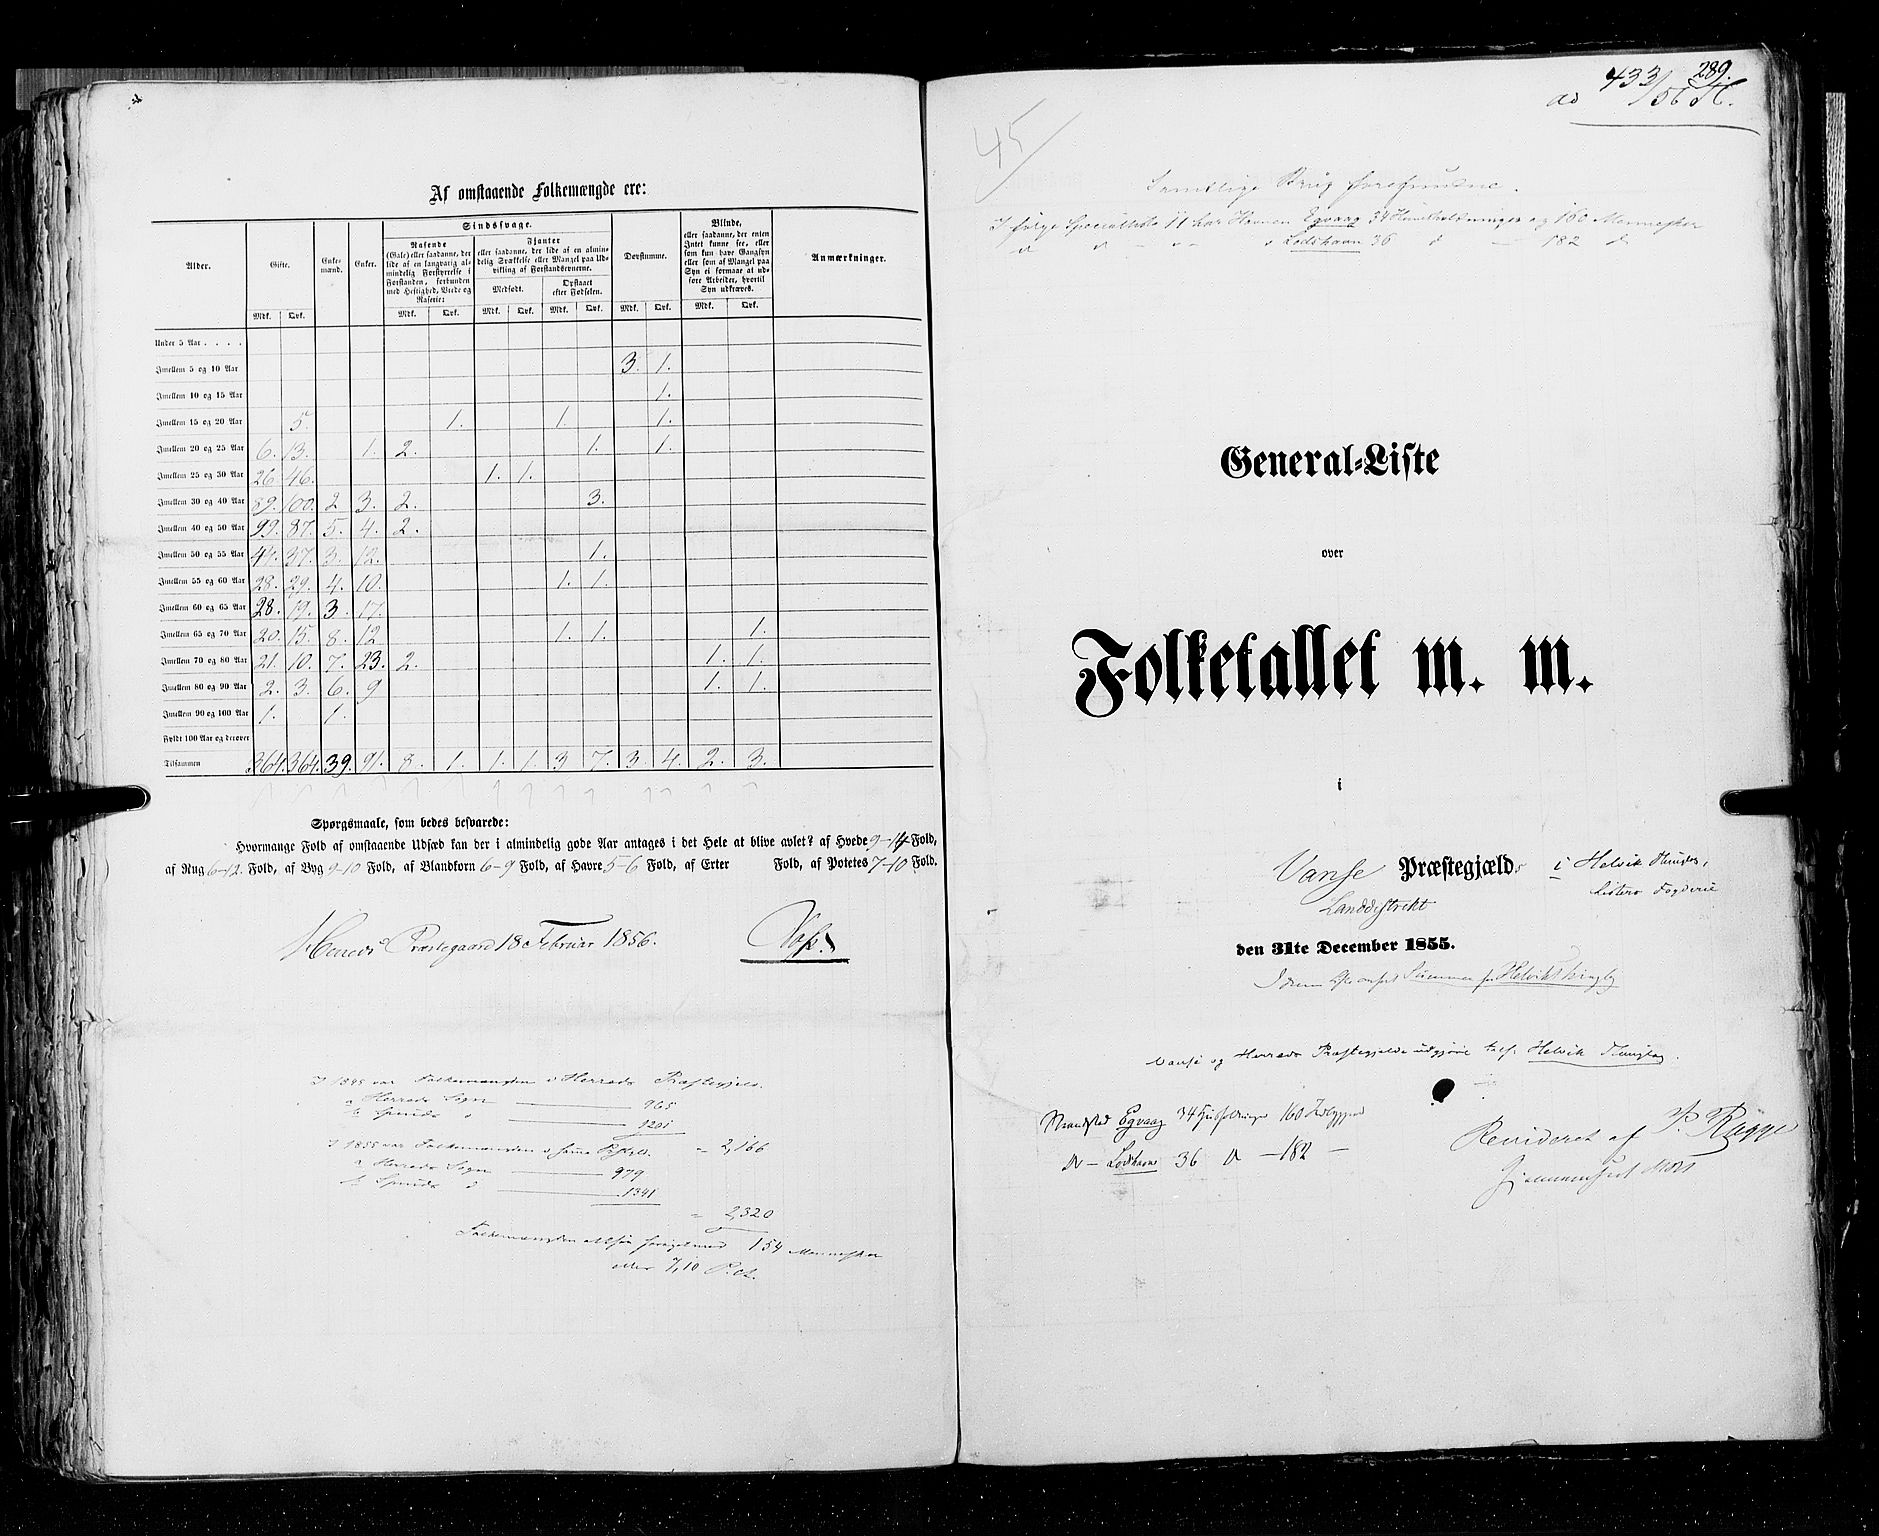 RA, Folketellingen 1855, bind 3: Bratsberg amt, Nedenes amt og Lister og Mandal amt, 1855, s. 289